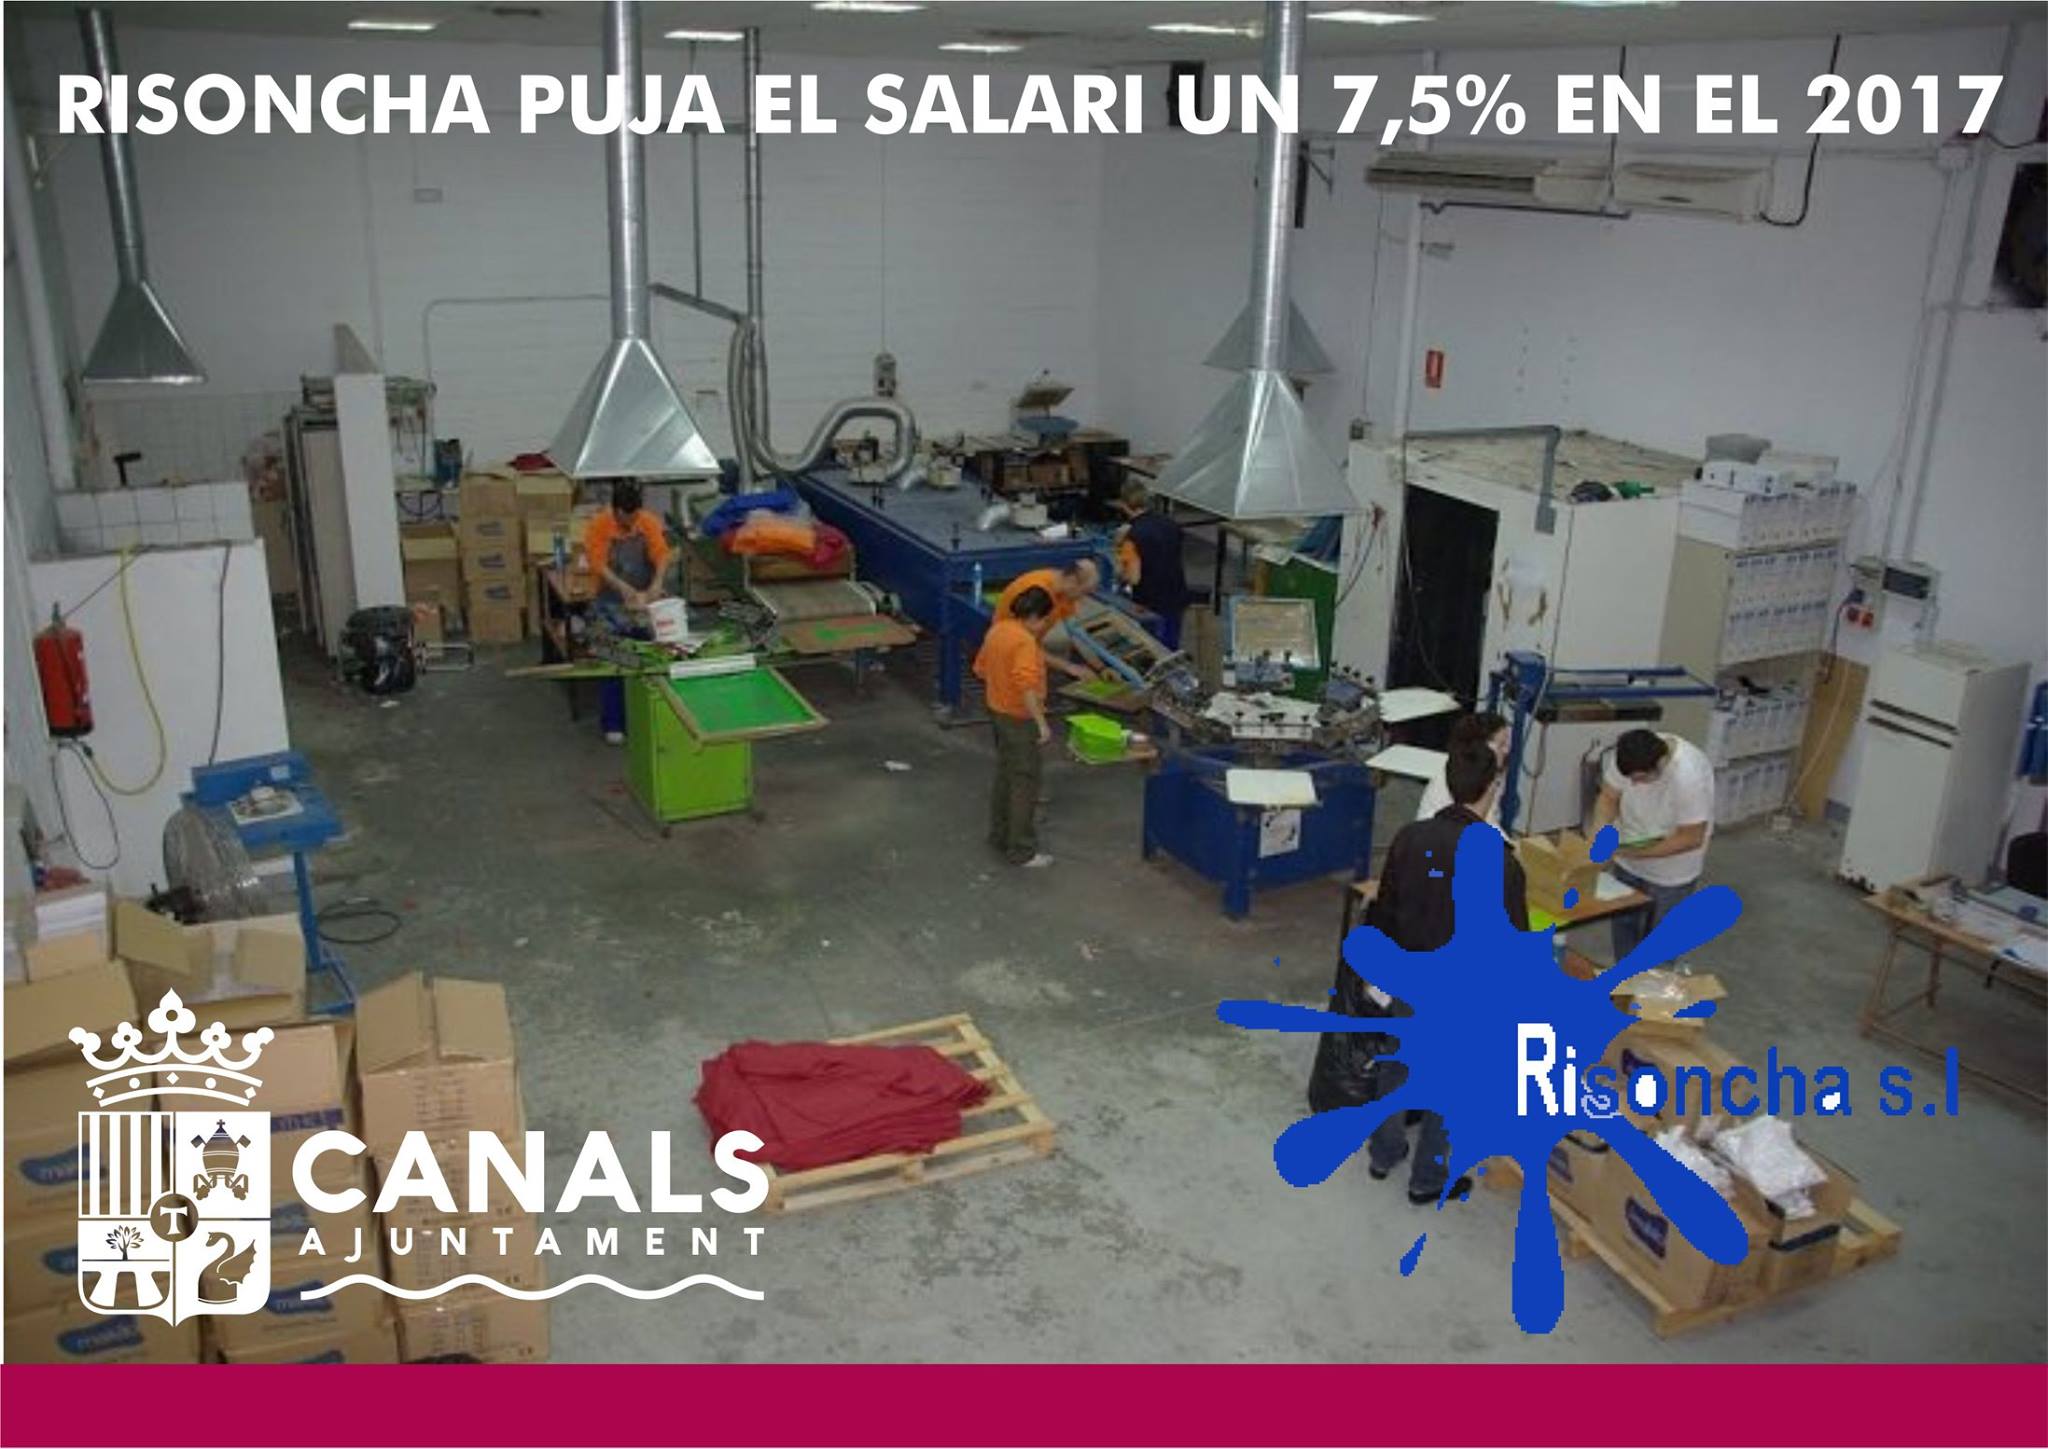 2017.02.01 Risoncha augmenta els salaris. Ajuntament de Canals.